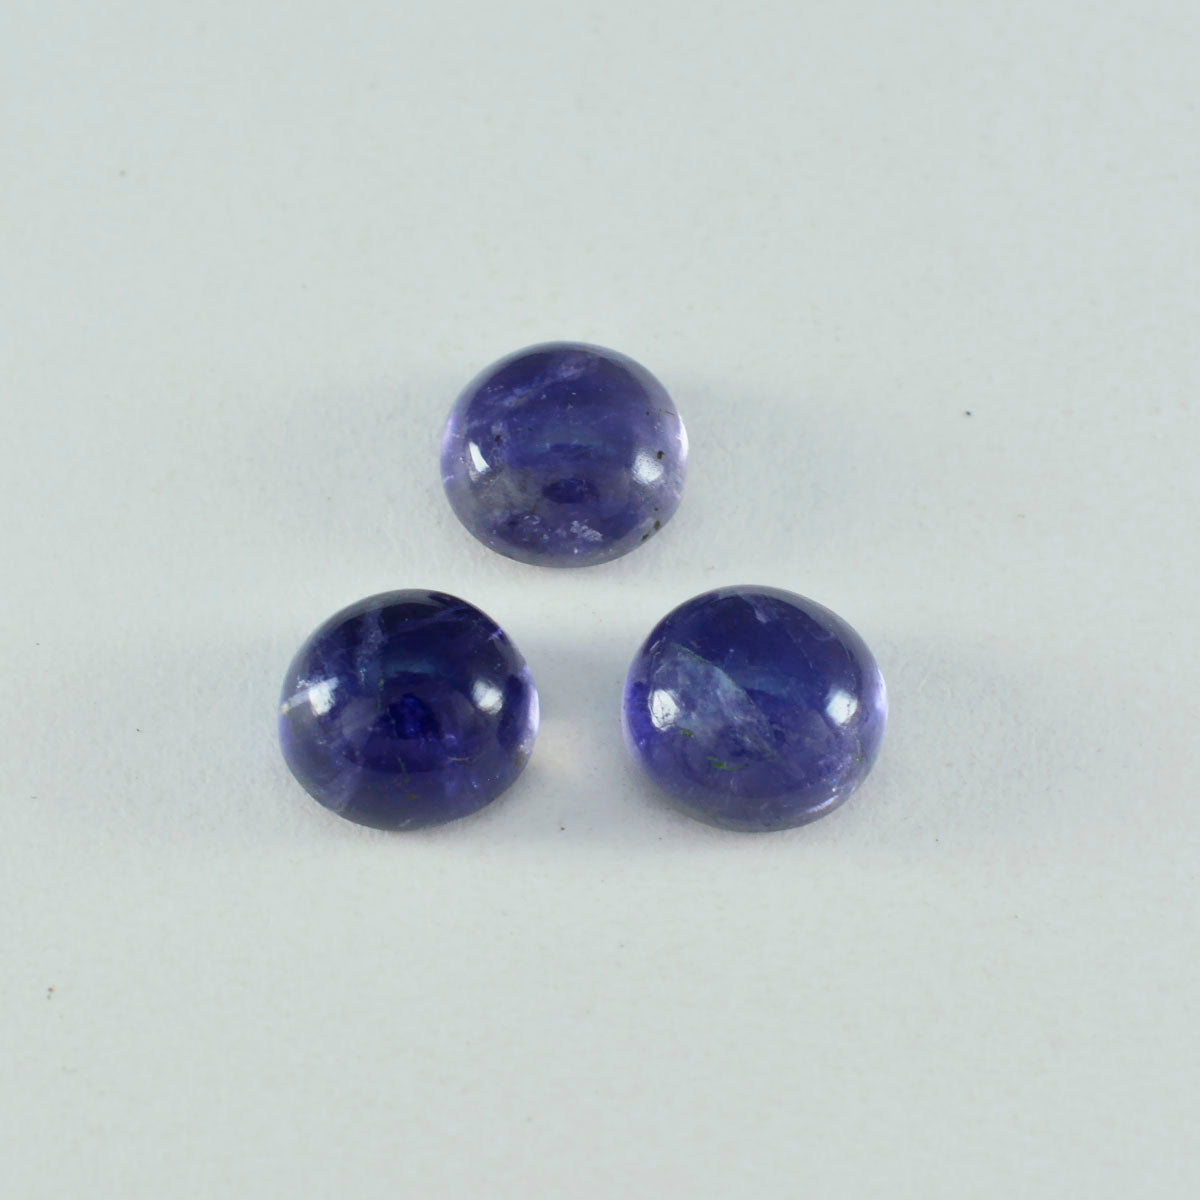 Riyogems 1 Stück blauer Iolith-Cabochon, 12 x 12 mm, runde Form, wunderschöne Qualitätsedelsteine